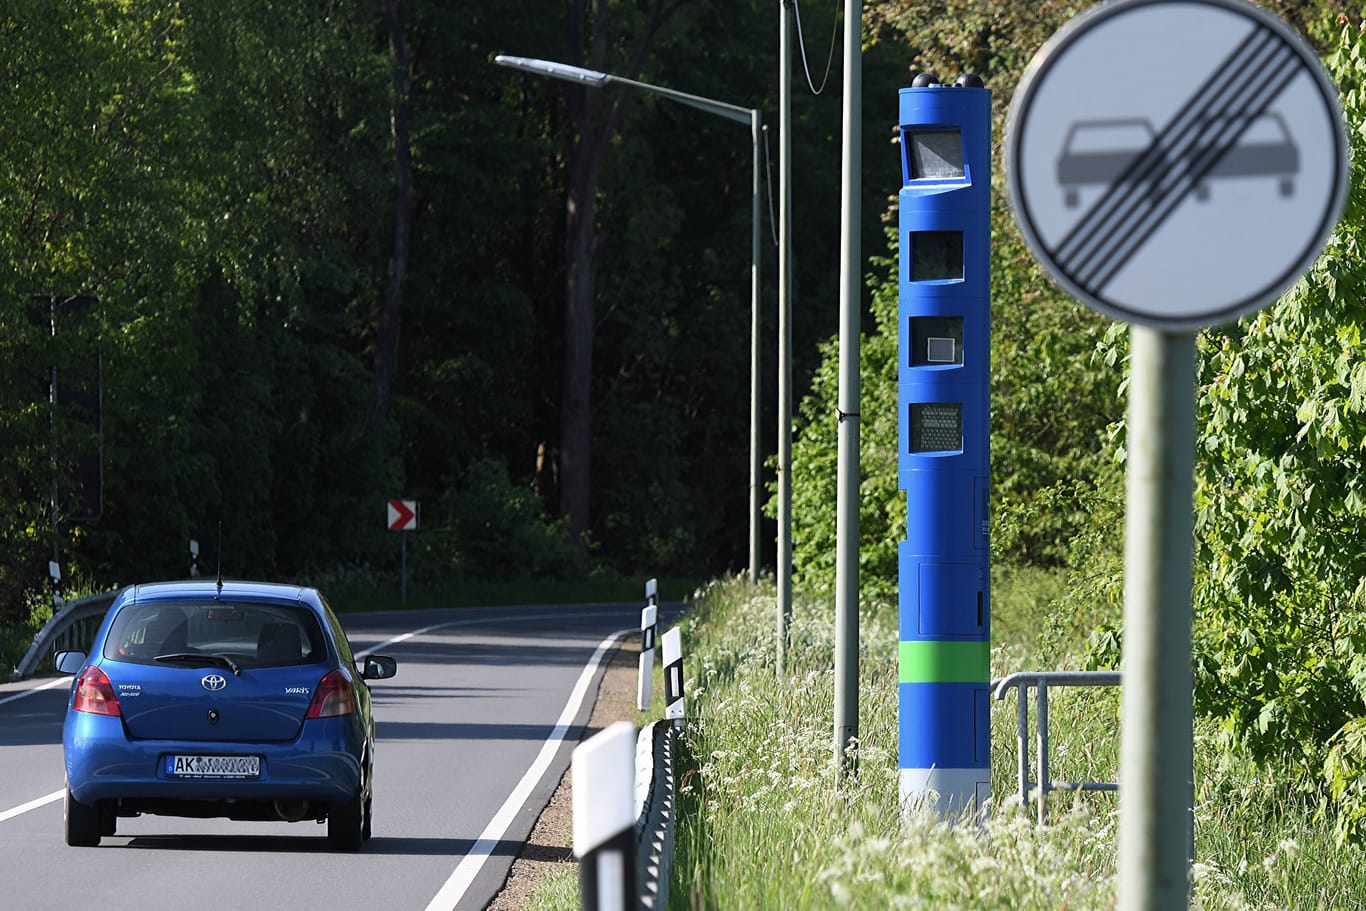 Blaue Säule am Straßenrand. Viele Autofahrer halten sie für eine Radarfalle.